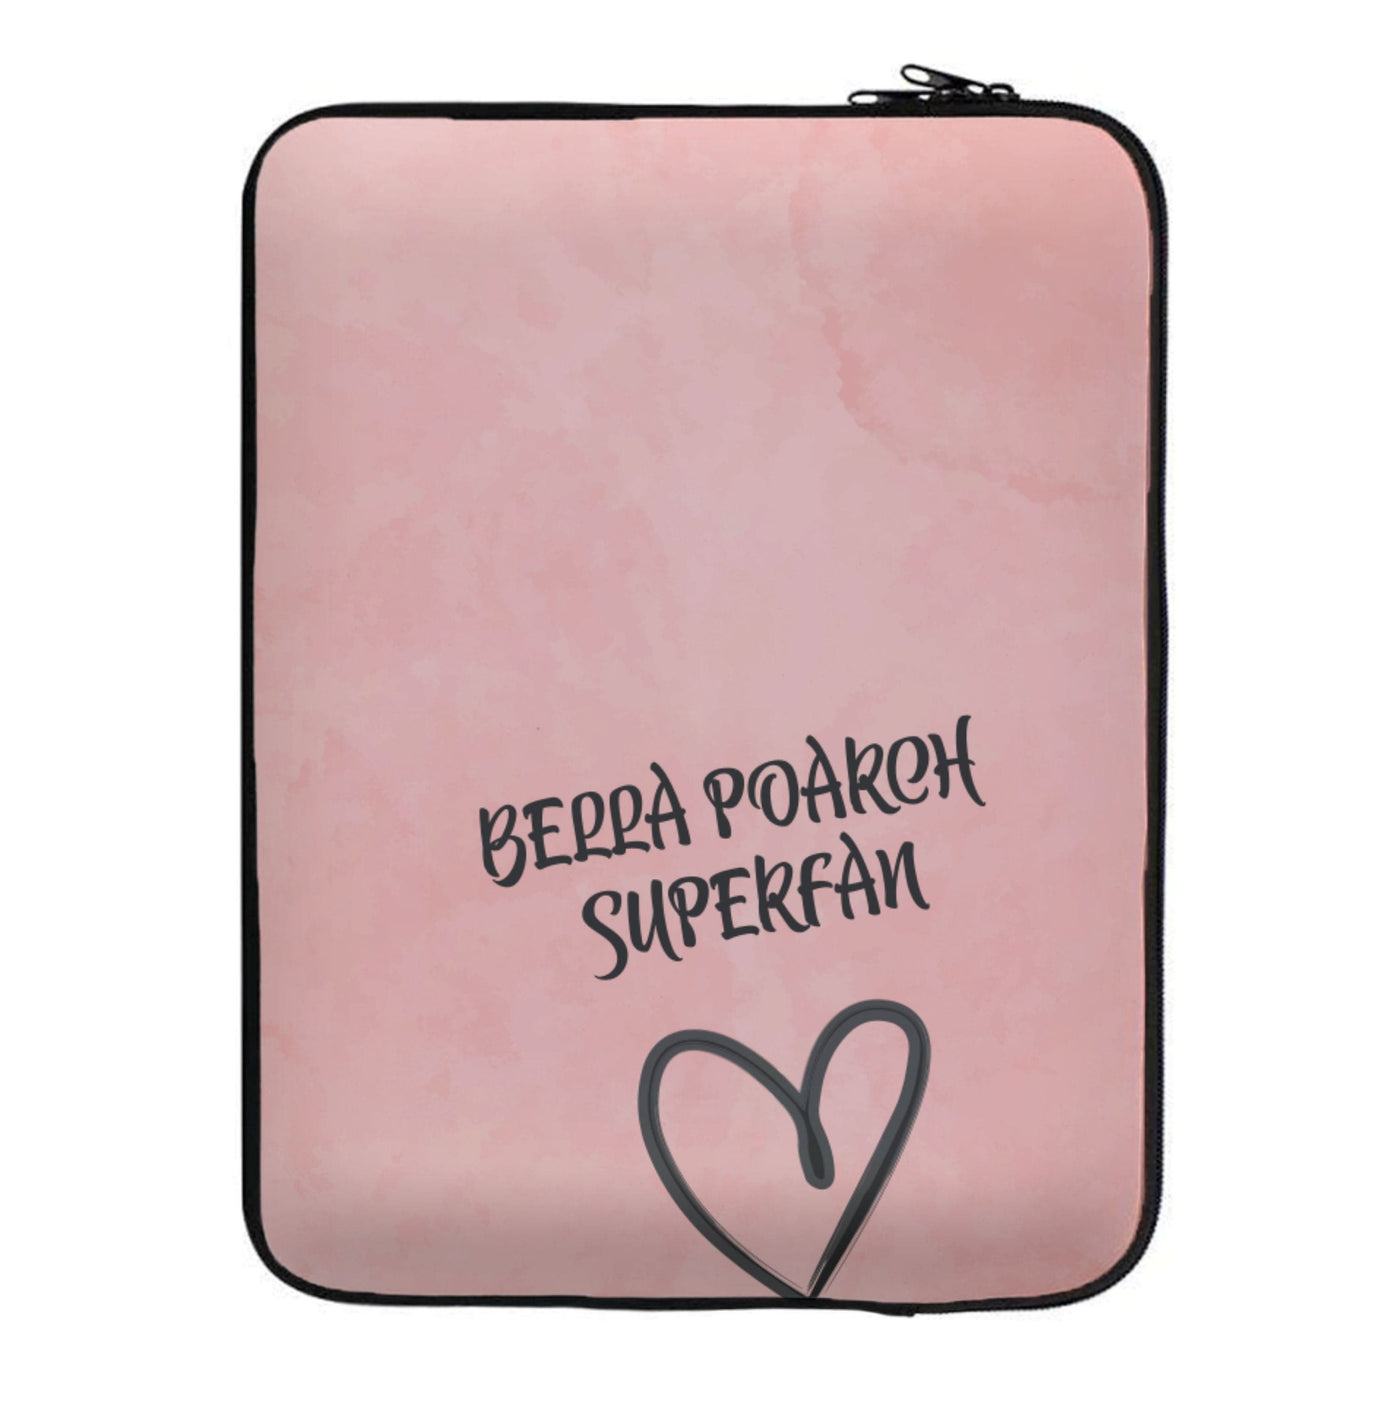 Bella Poarch Superfan Laptop Sleeve